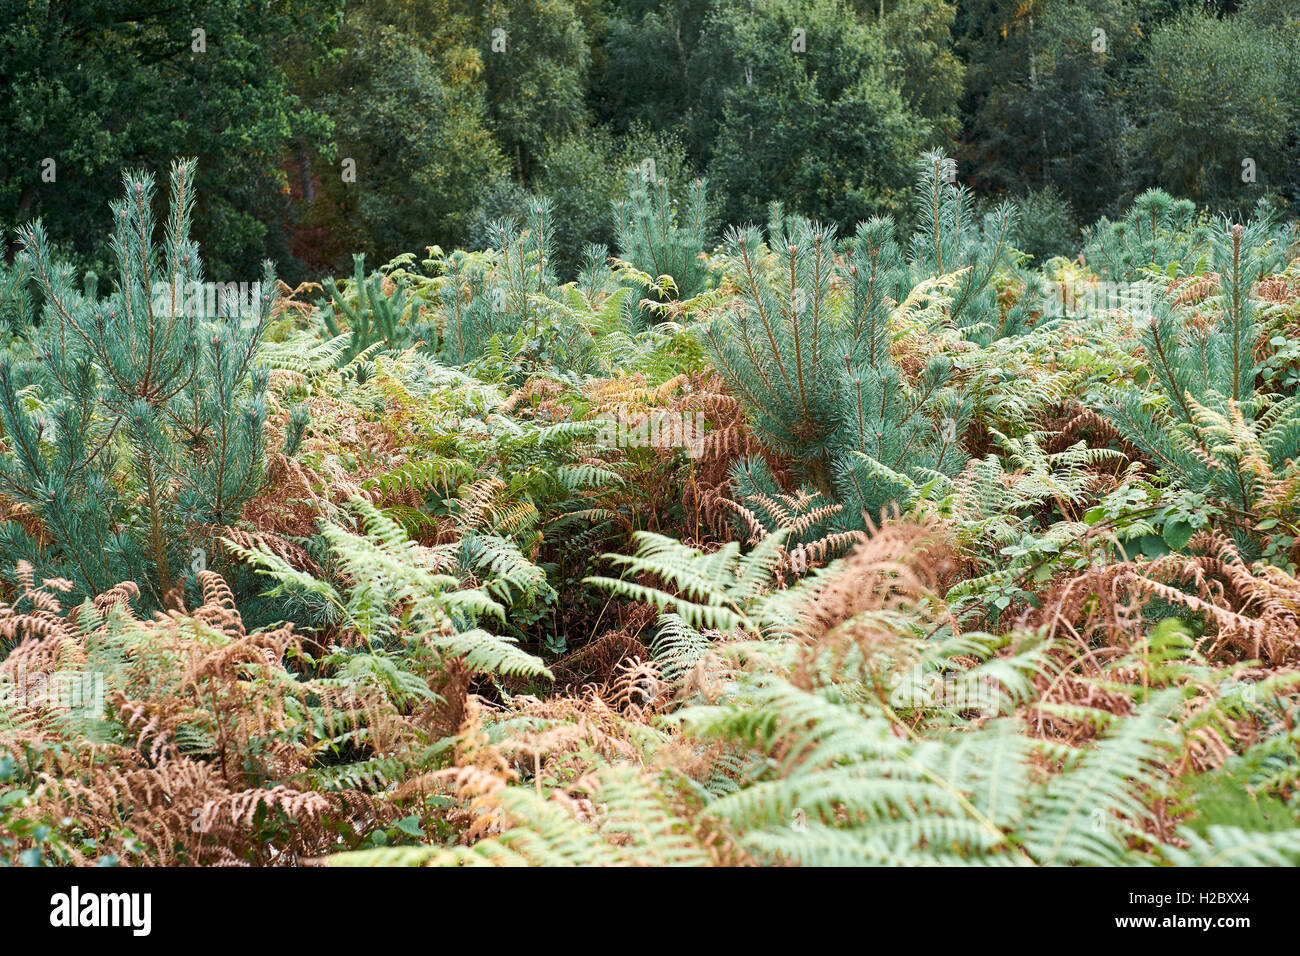 Le pin sylvestre (Pinus sylvestris) croissant dans une plantation forestière, au Royaume-Uni. Banque D'Images